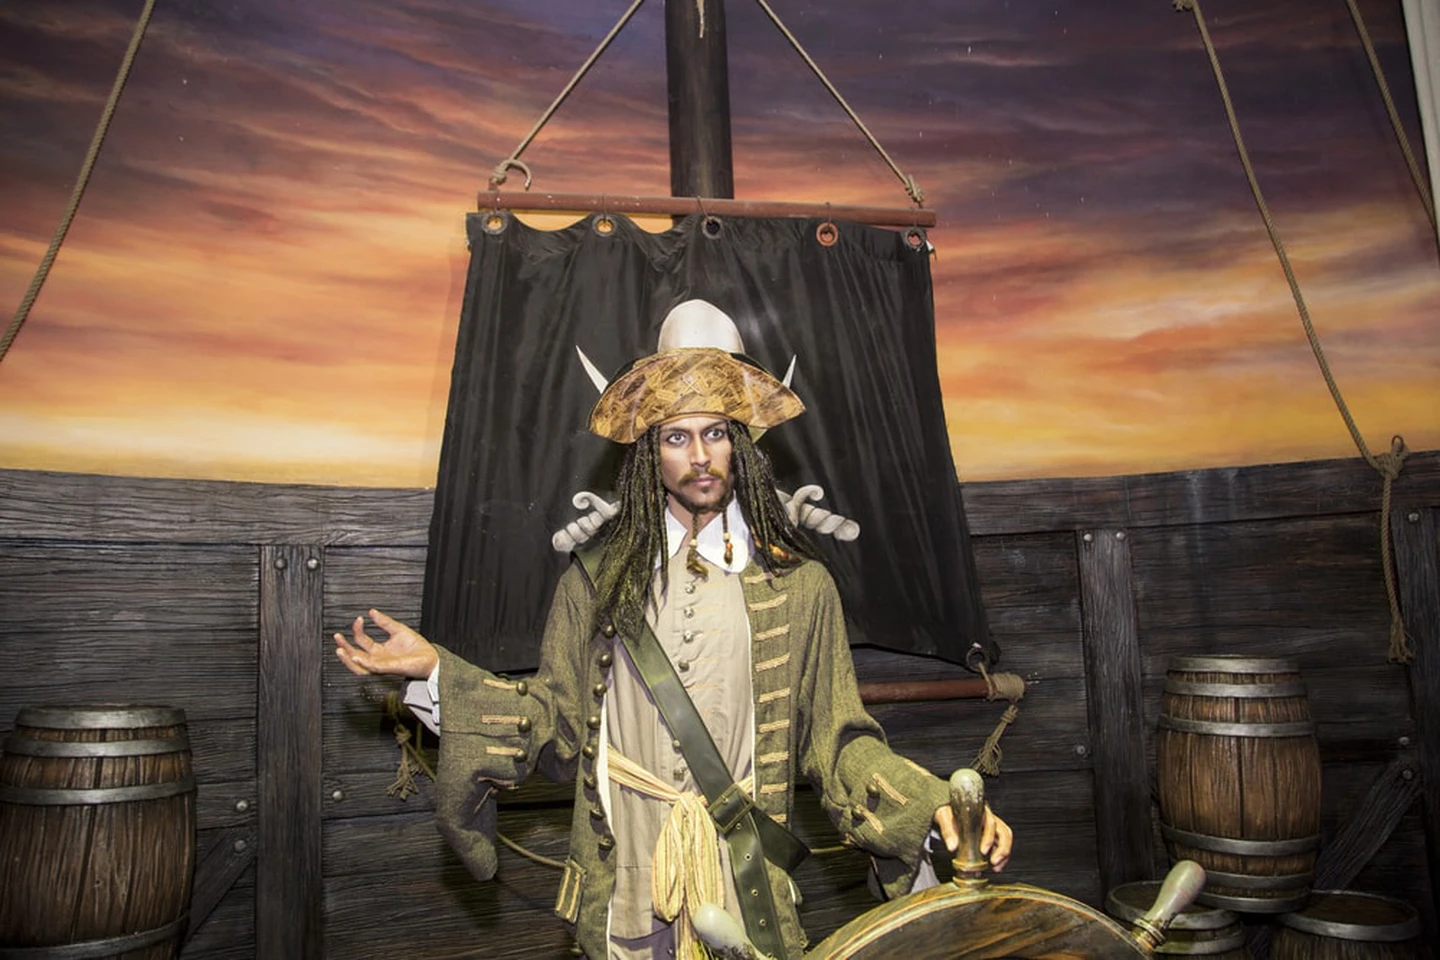 Captain Jack Sparrow steering with Zen | © Ovu0ng/Shutterstock